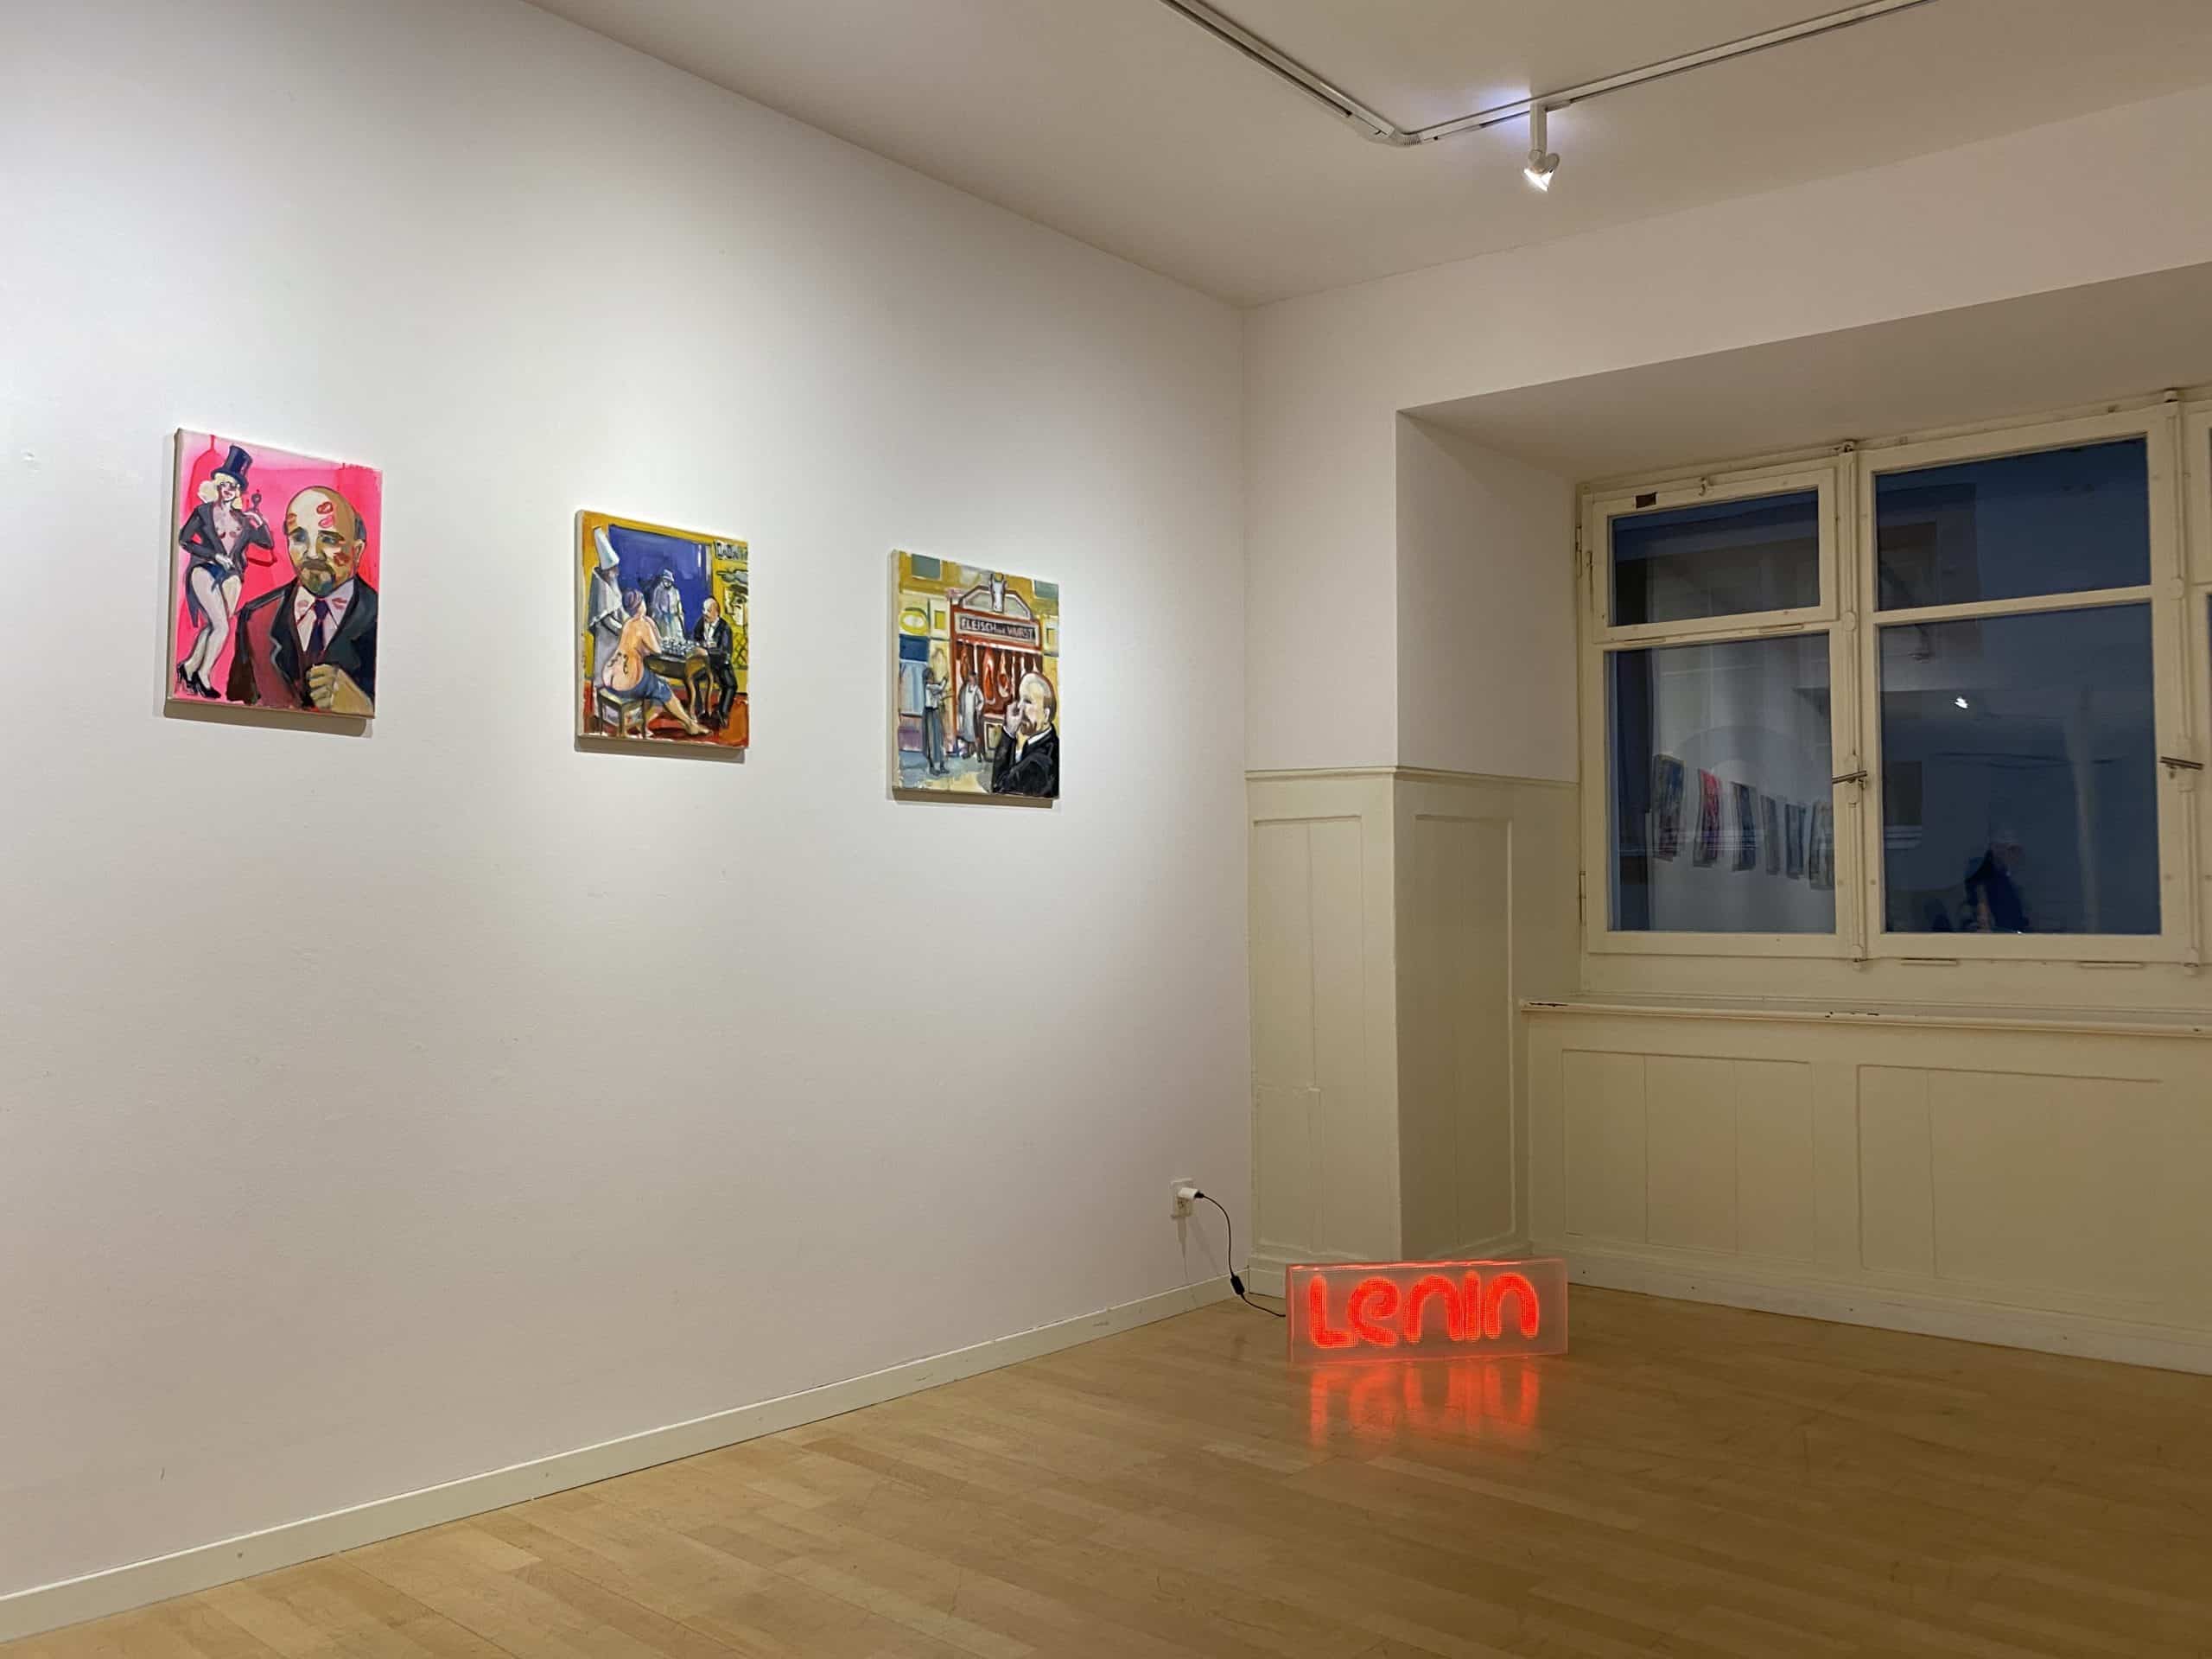 Выставка Марии Помянской «Ленин в Цюрихе» прошла в рамках выставочной серии Frisch-2021. Цюрих, 29.10.2021 г. (© schwingen.net)